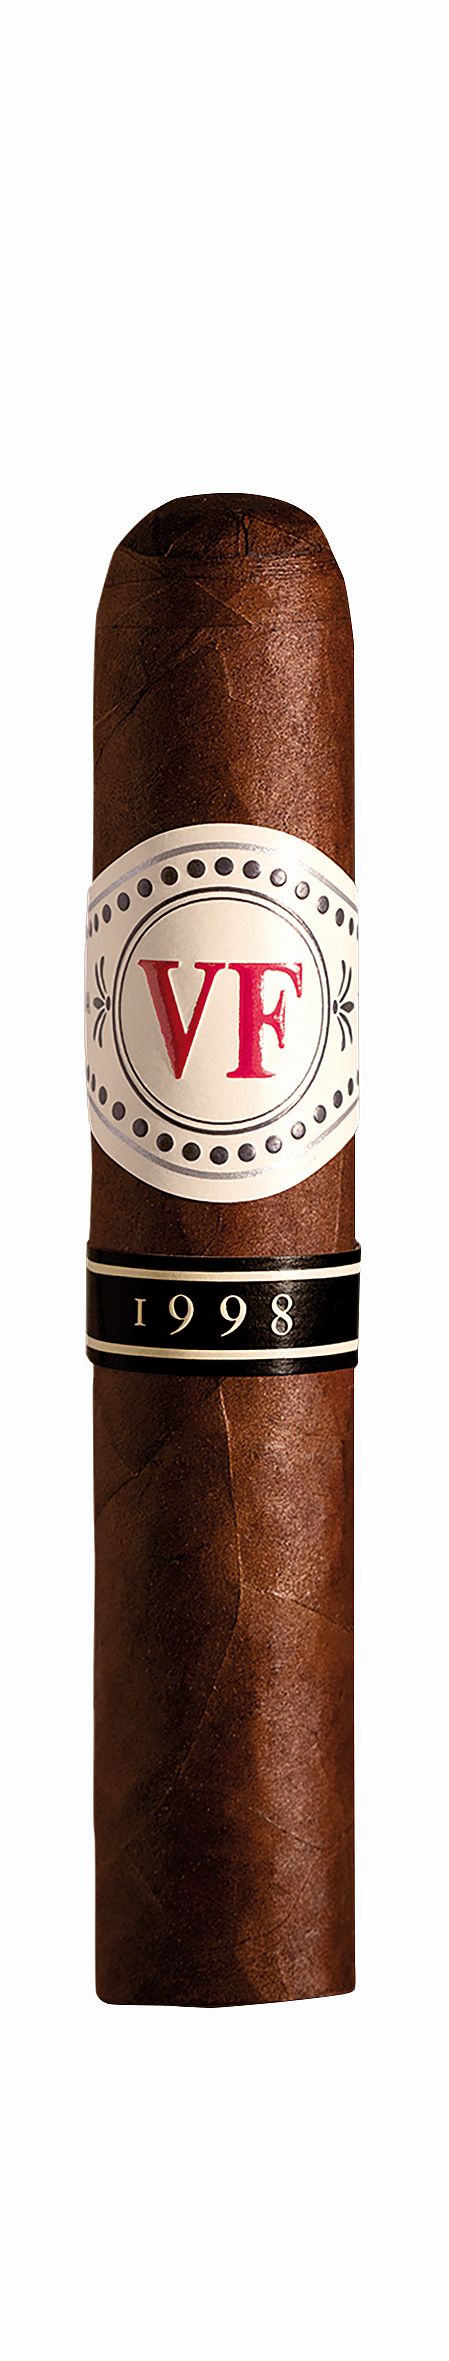 Vega Fina 1998 VF 50